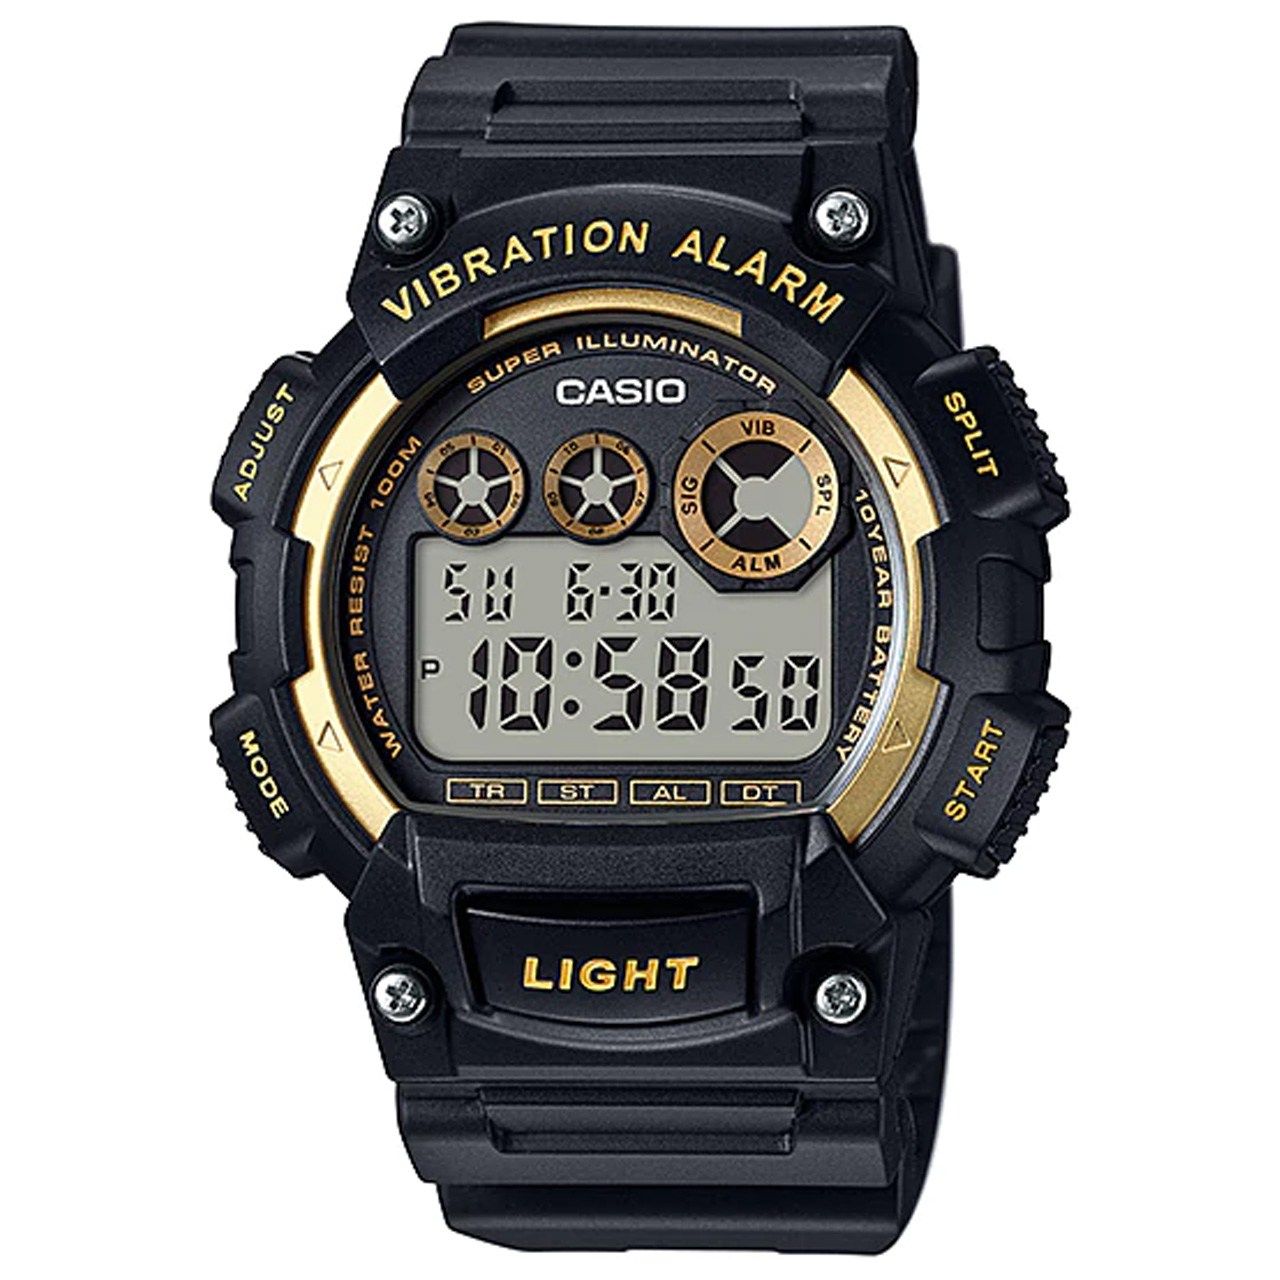 ساعت مچی دیجیتالی مردانه کاسیو مدل W-735H-1A2VDF -  - 1